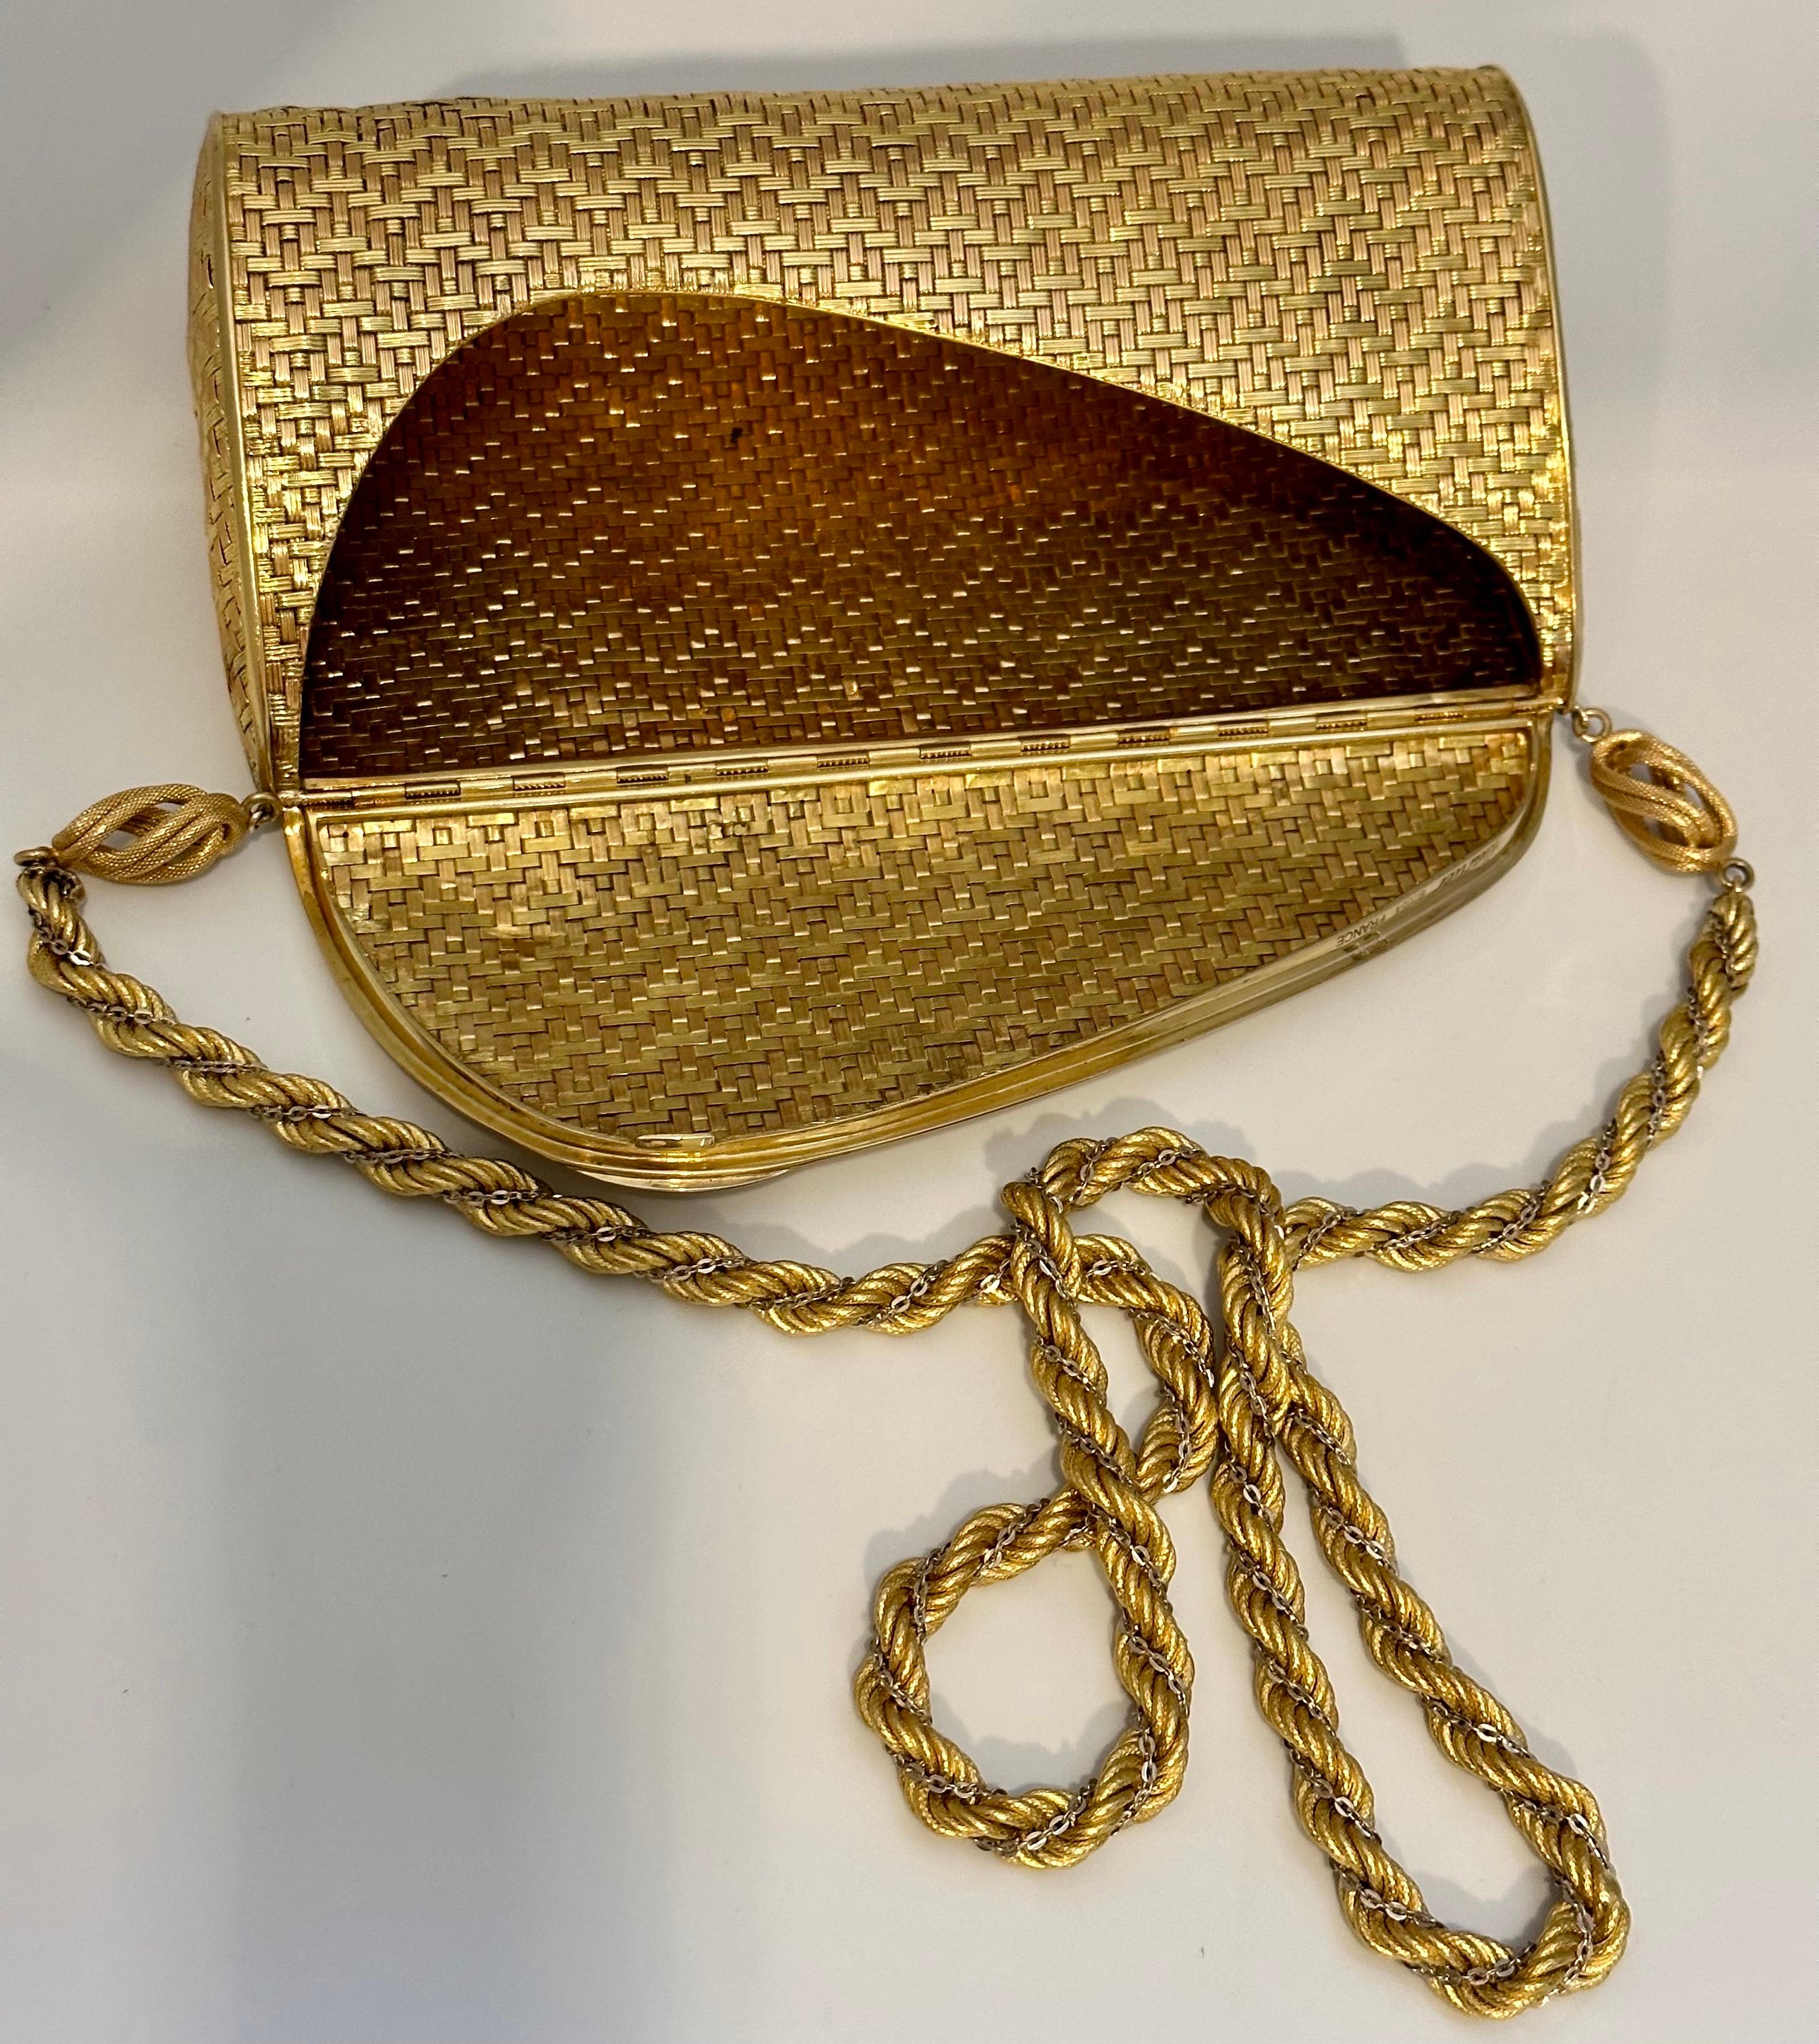 Cartier - Sac à main en maille or jaune 18 carats avec chaîne à l'épaule - Rare - 401 Gm 4